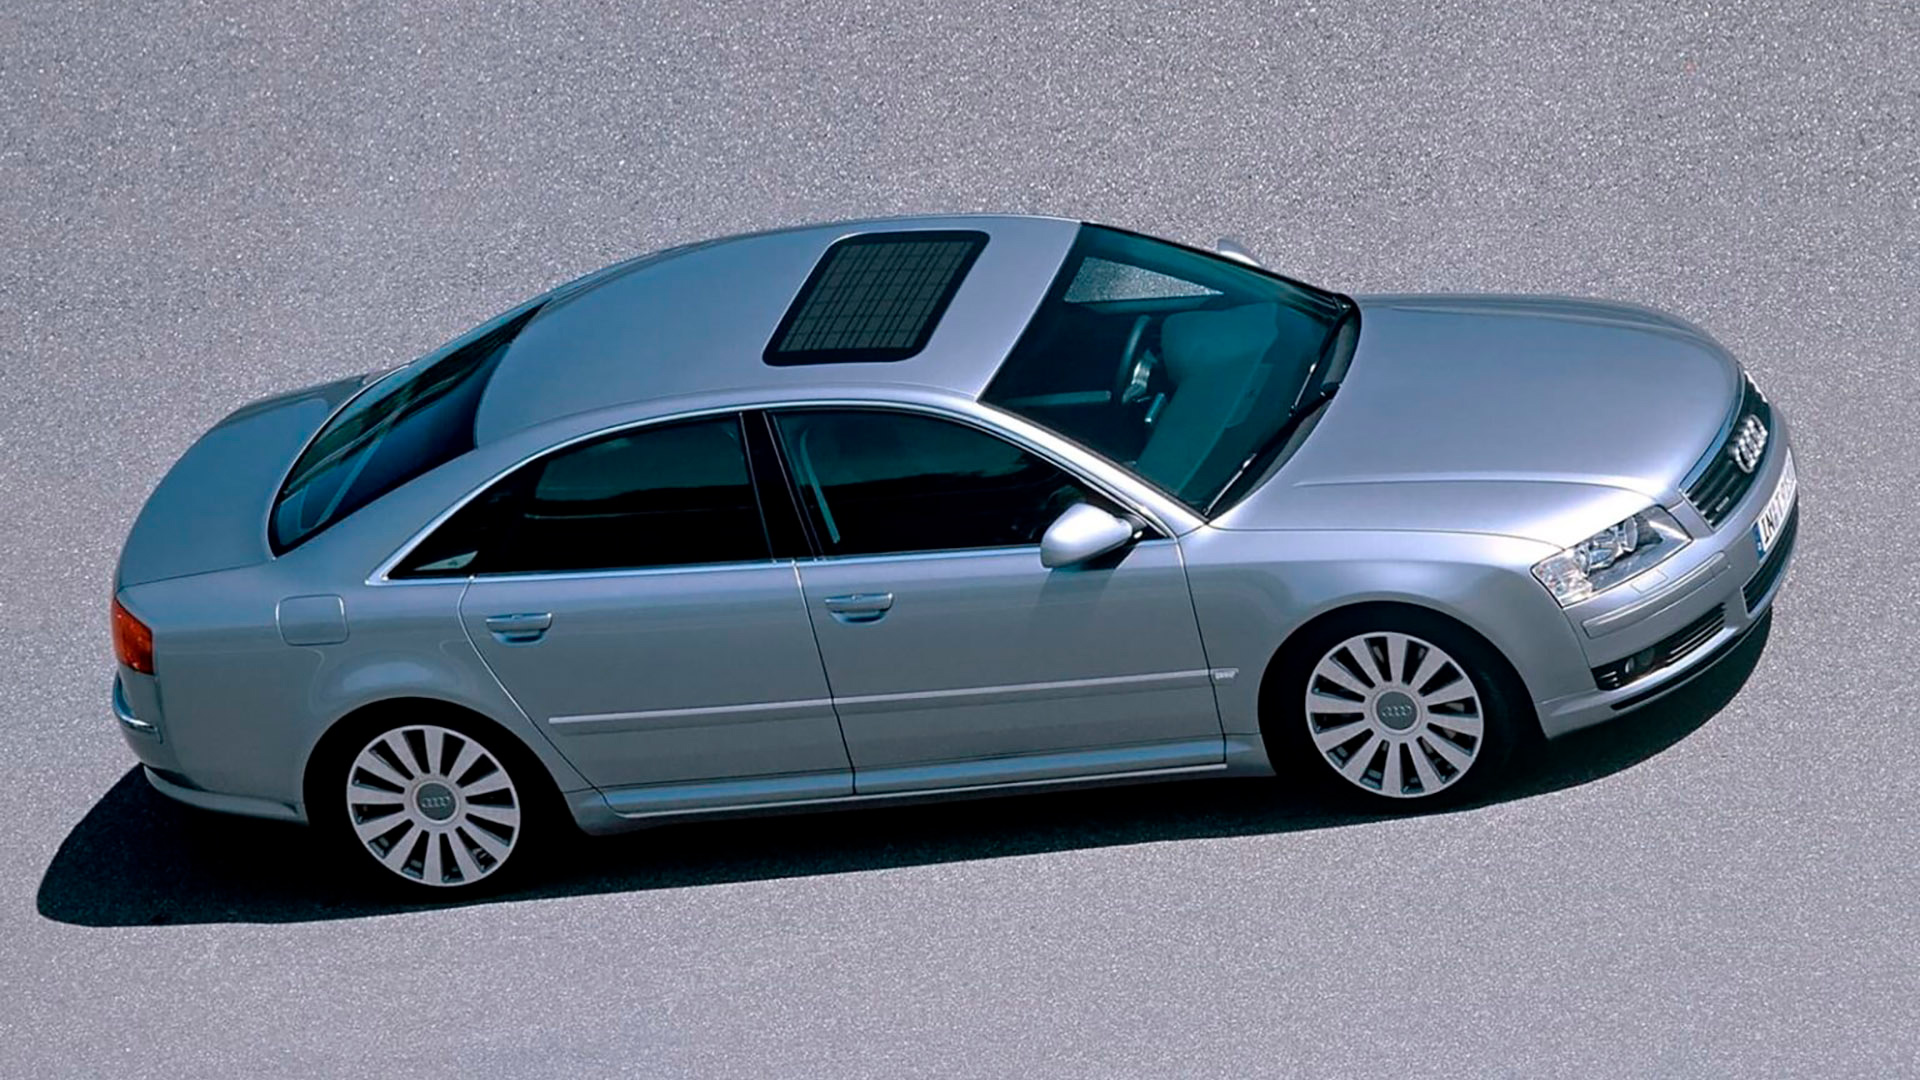 En un modelo de Audi del 2002, las células solares se usaban para refrigerar el habitáculo cuando quedaba parado al sol